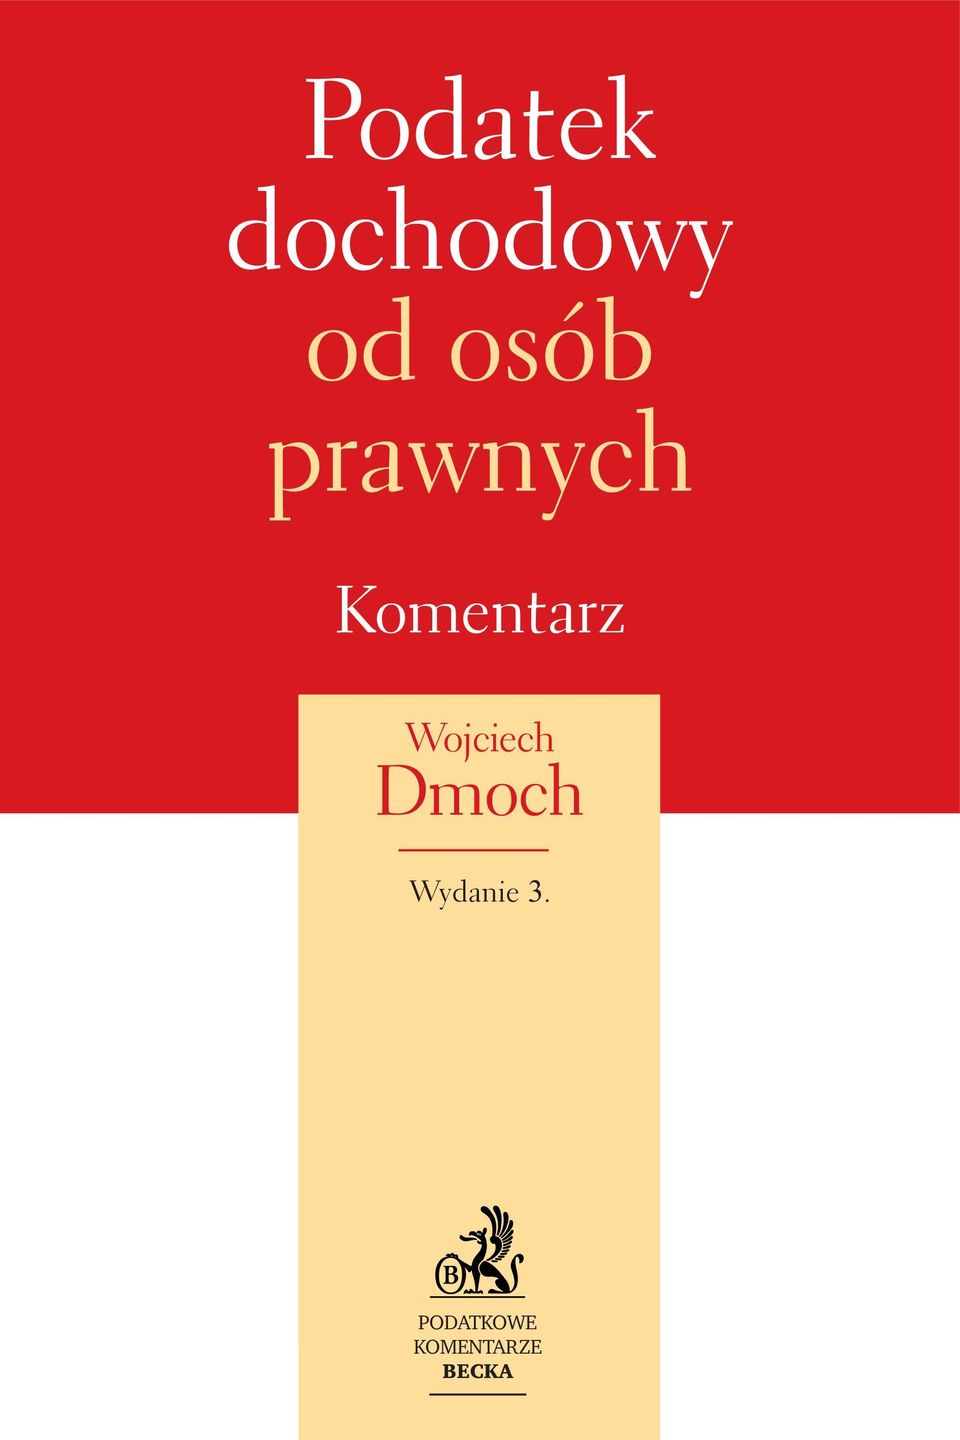 Wojciech Dmoch Wydanie 3.